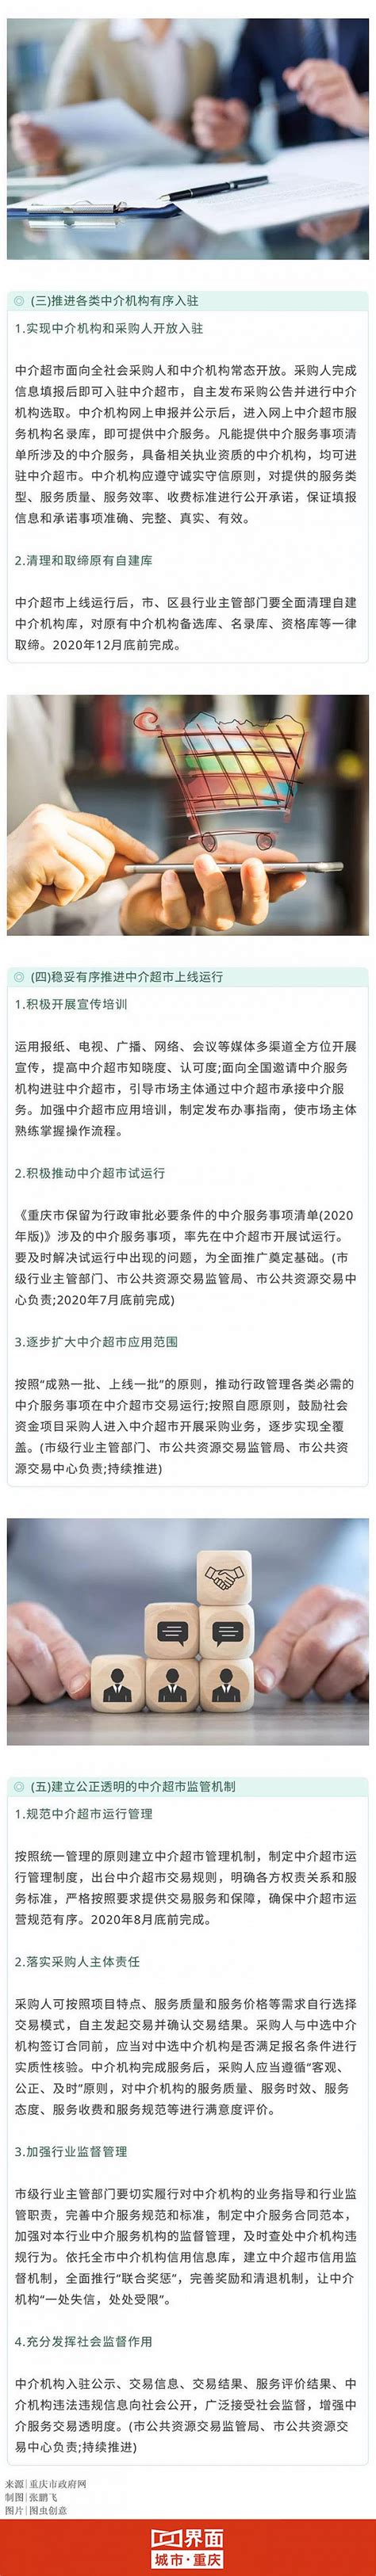 重庆将开网上中介服务超市: 行政检查、征收、裁决“一网解决”|界面新闻